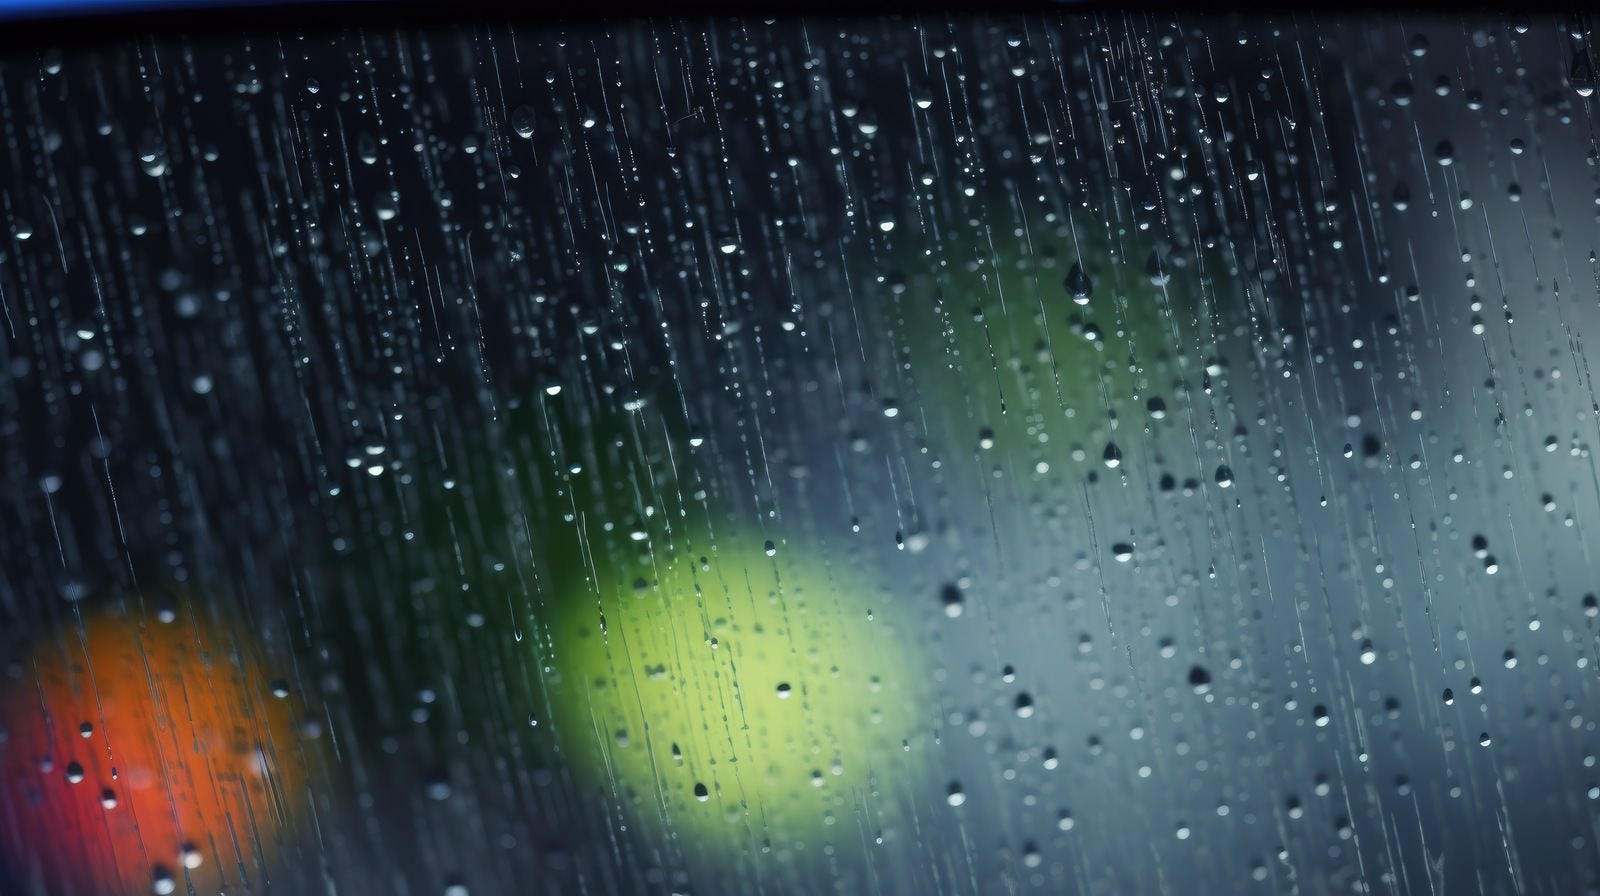 「雨が降った窓と流れる水滴」の写真